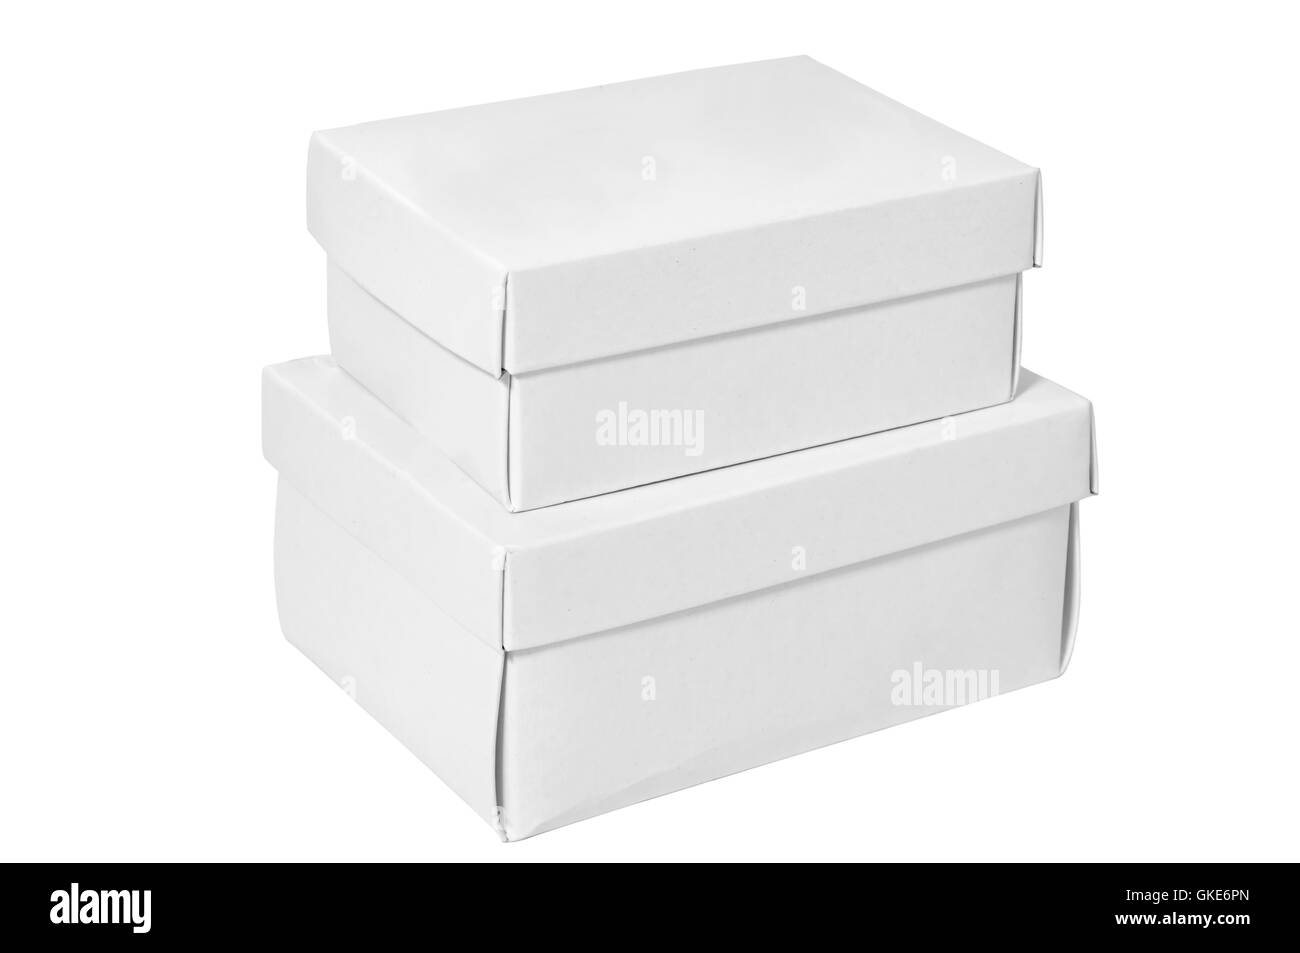 White boxes Stock Photo